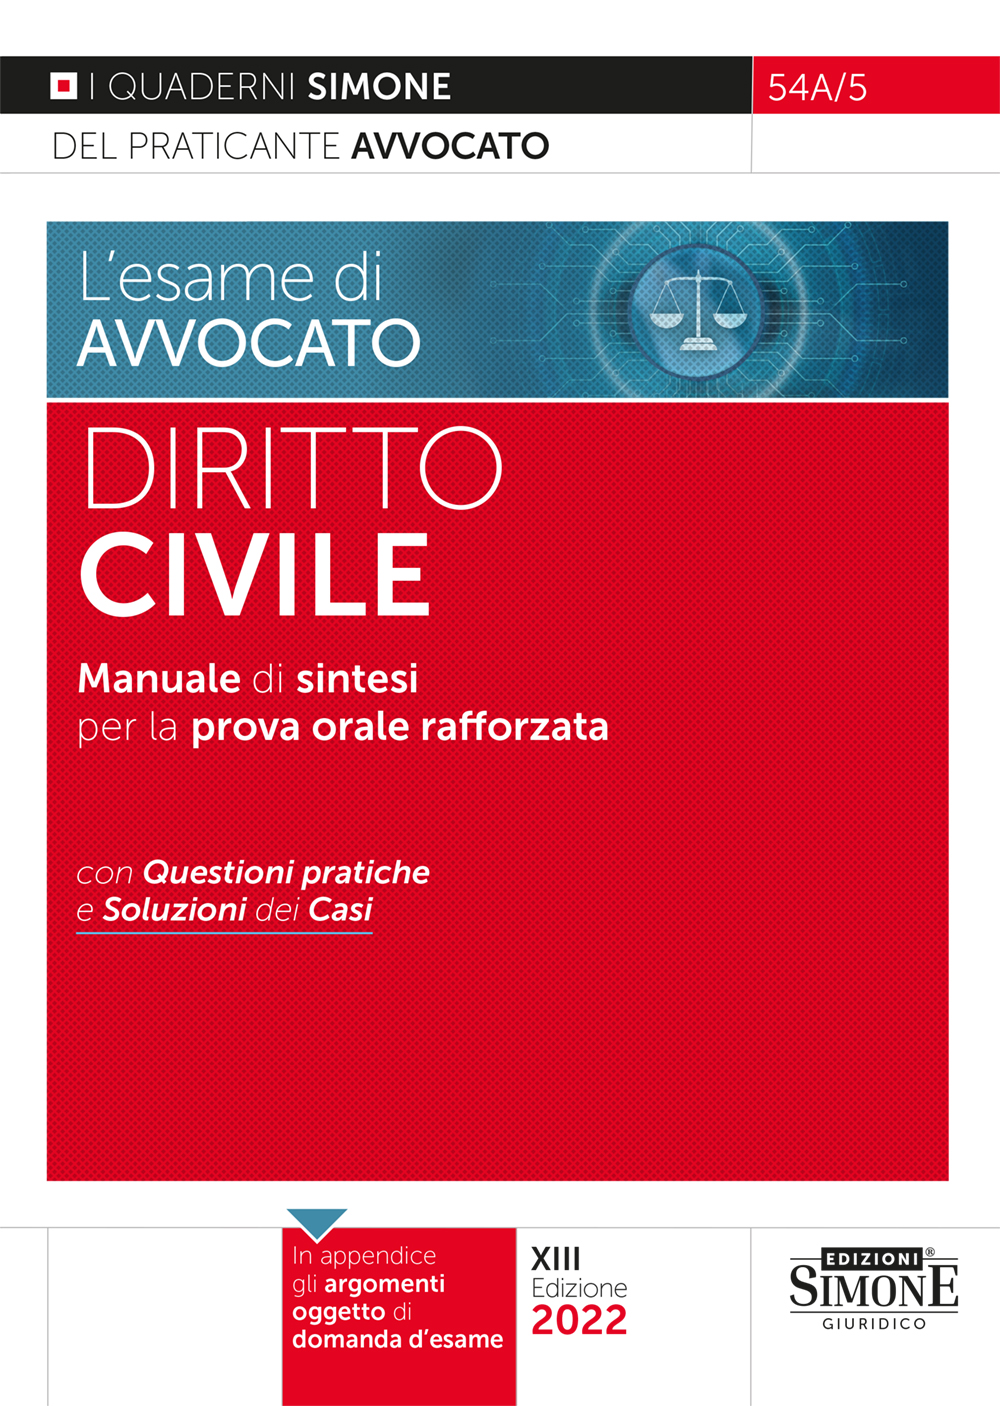 [Ebook] L'esame di avvocato - Diritto Civile - Manuale di sintesi per la prova orale rafforzata